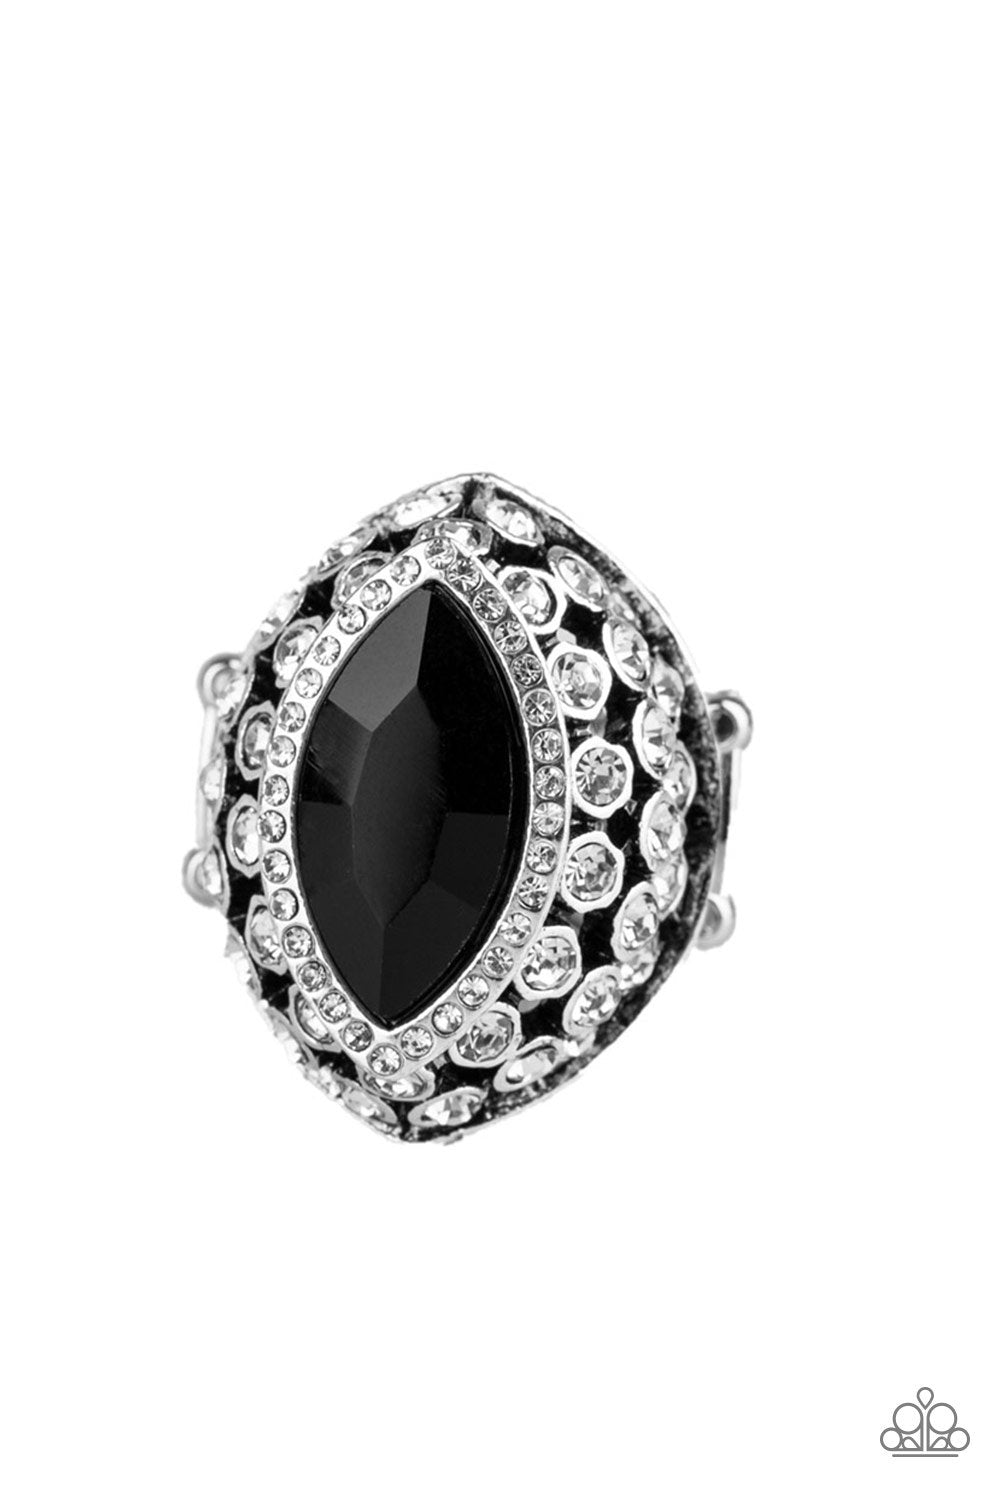 Royal Radiance Black
Ring - Daria's Blings N Things